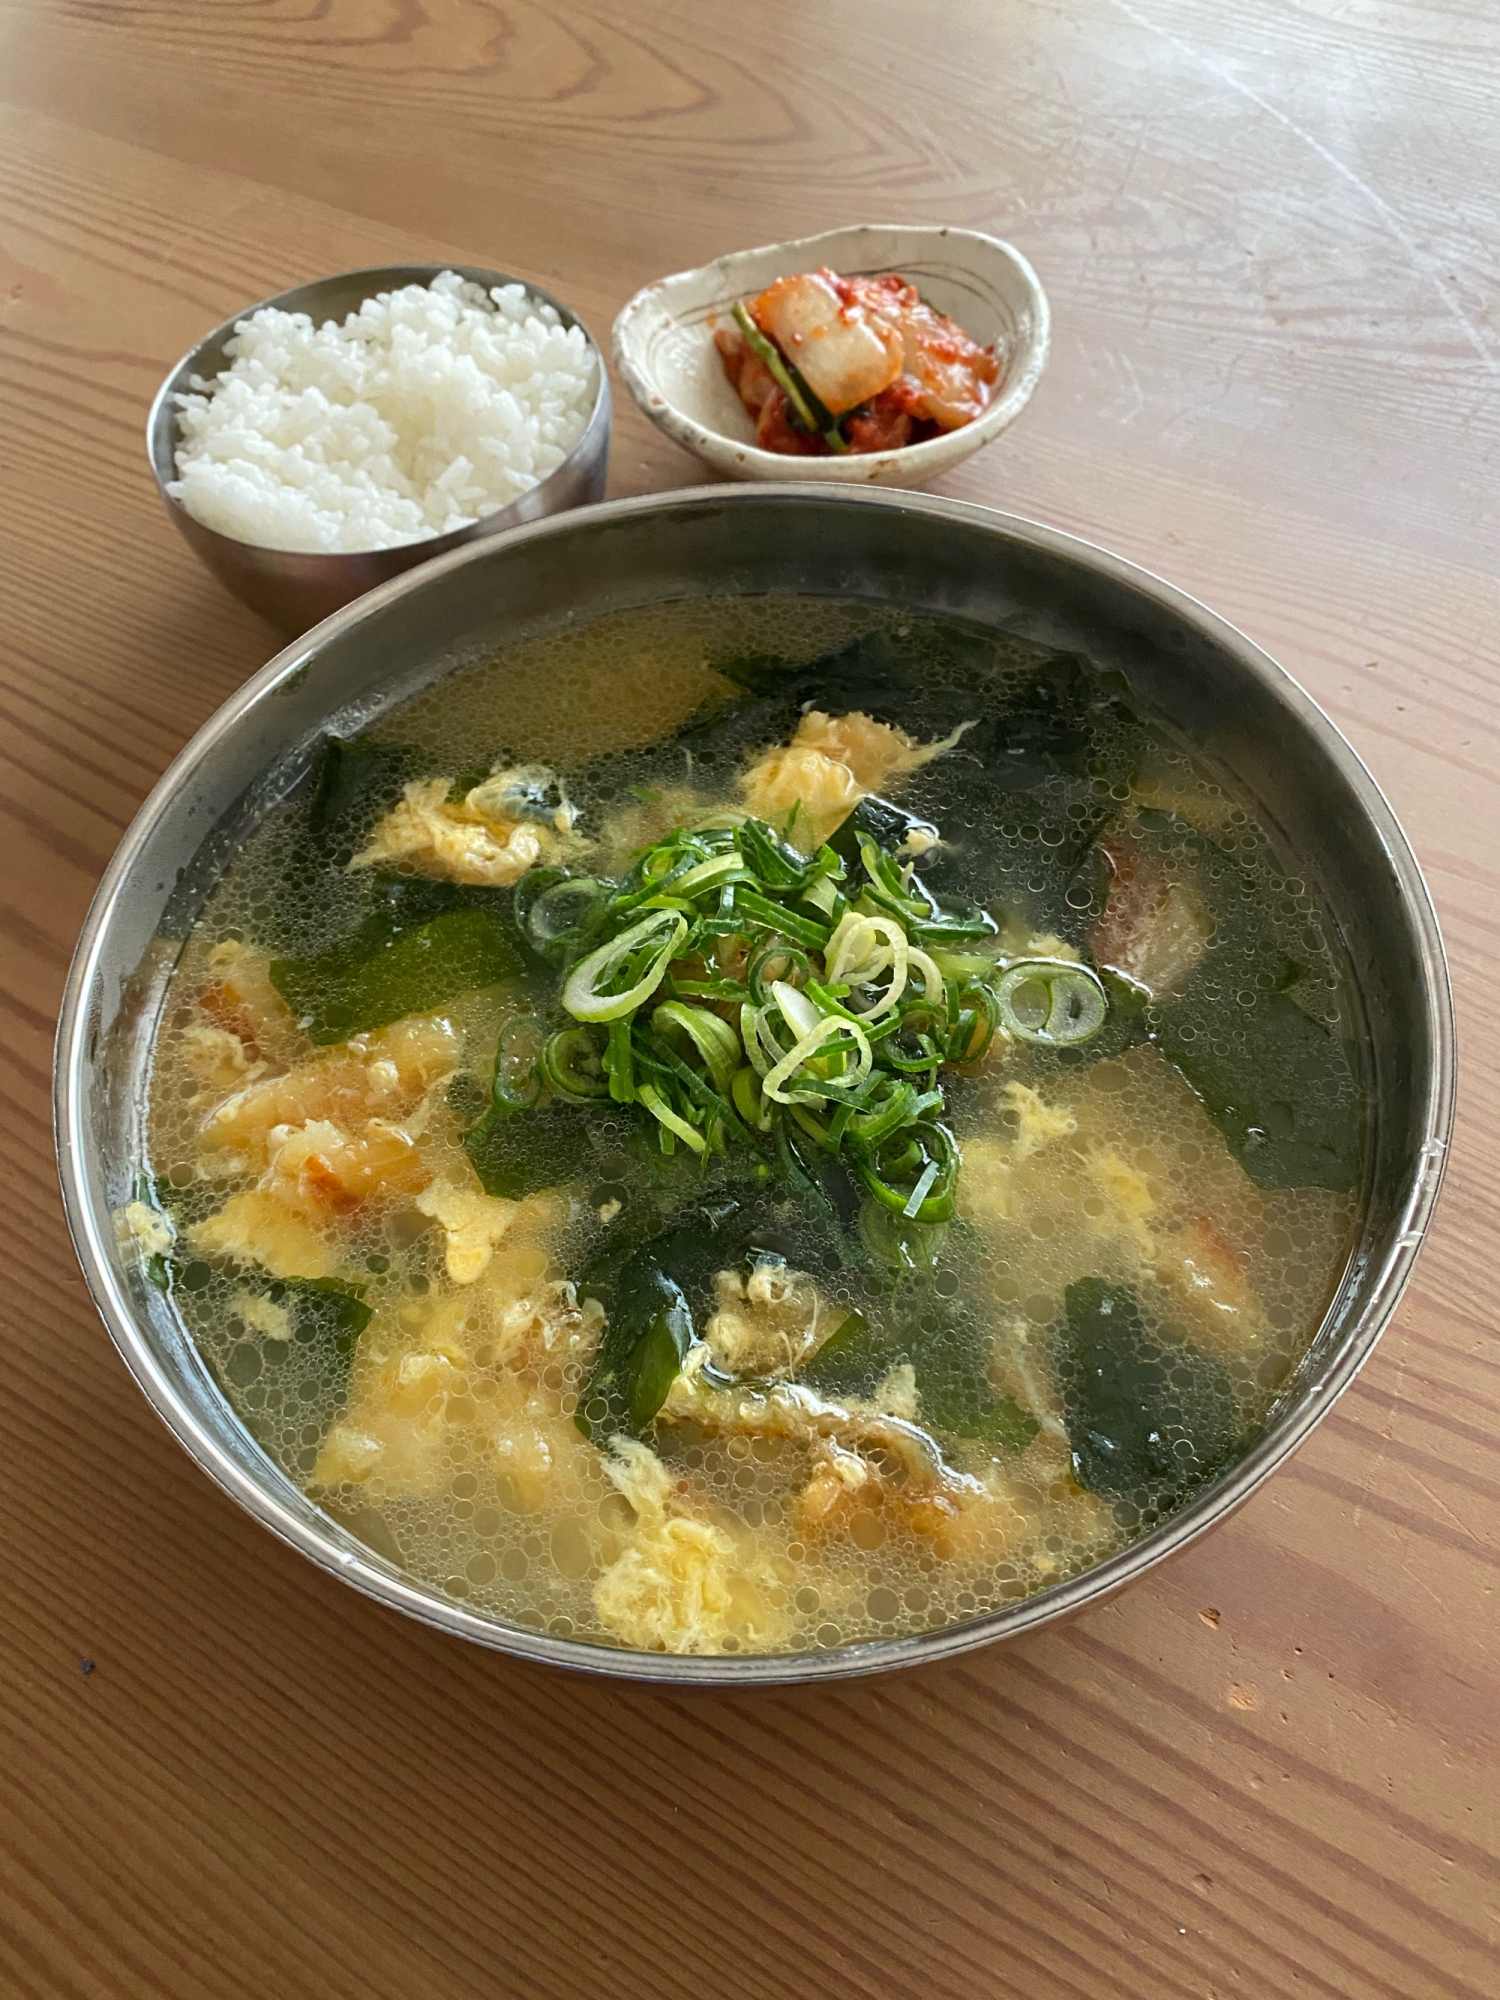 韓国飯♪高タンパク低カロリー プゴクスープ